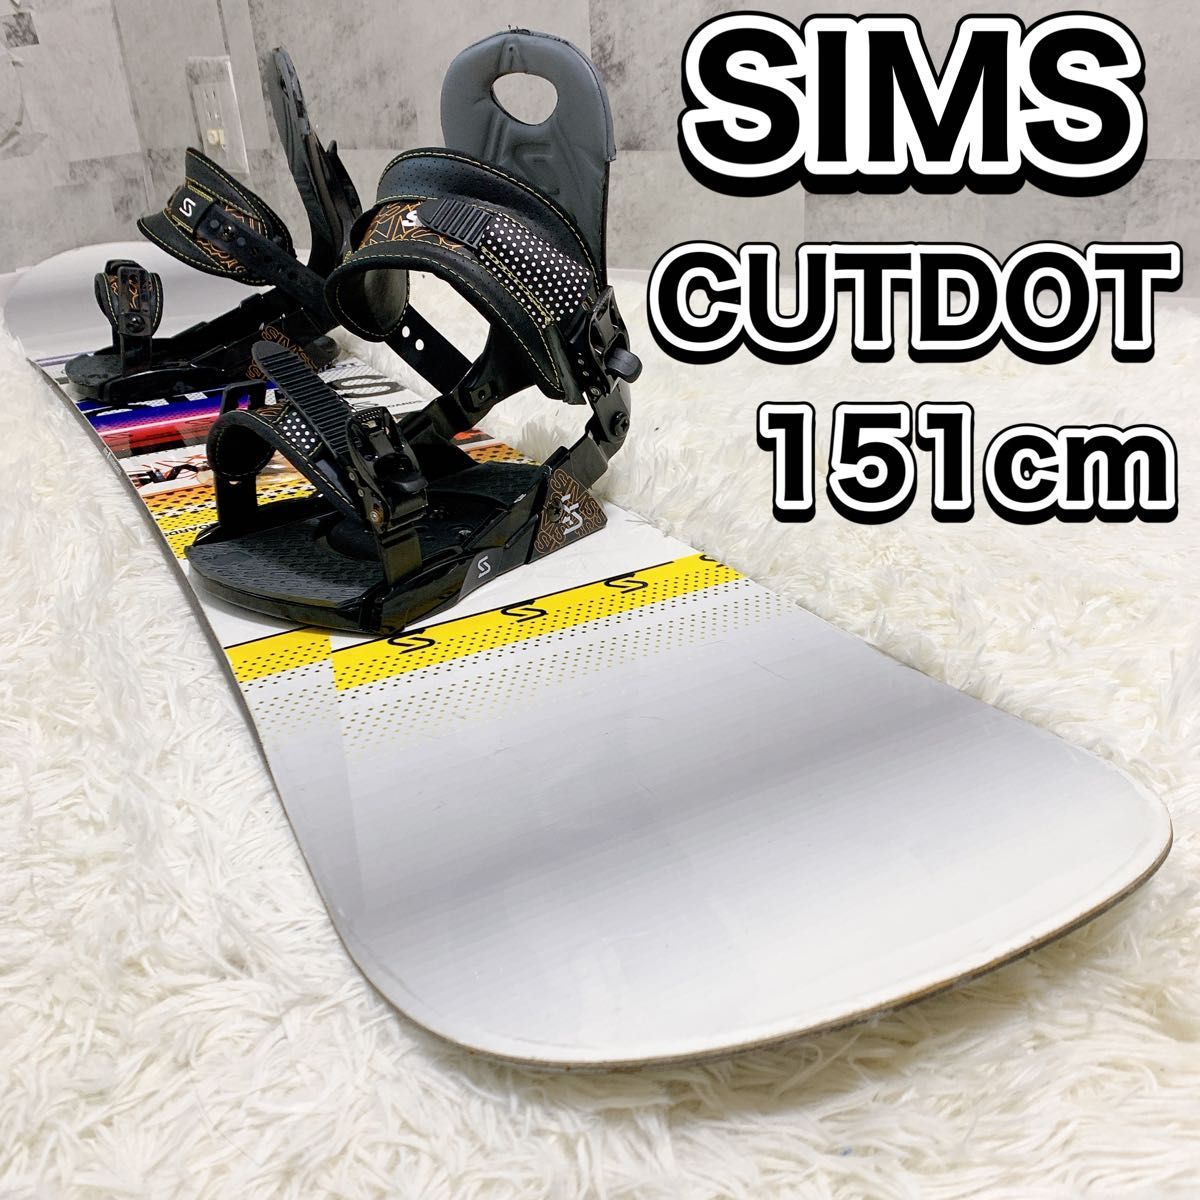 SIMS シムス CUTDOT 151cmビンディング付 スノーボード2点セット